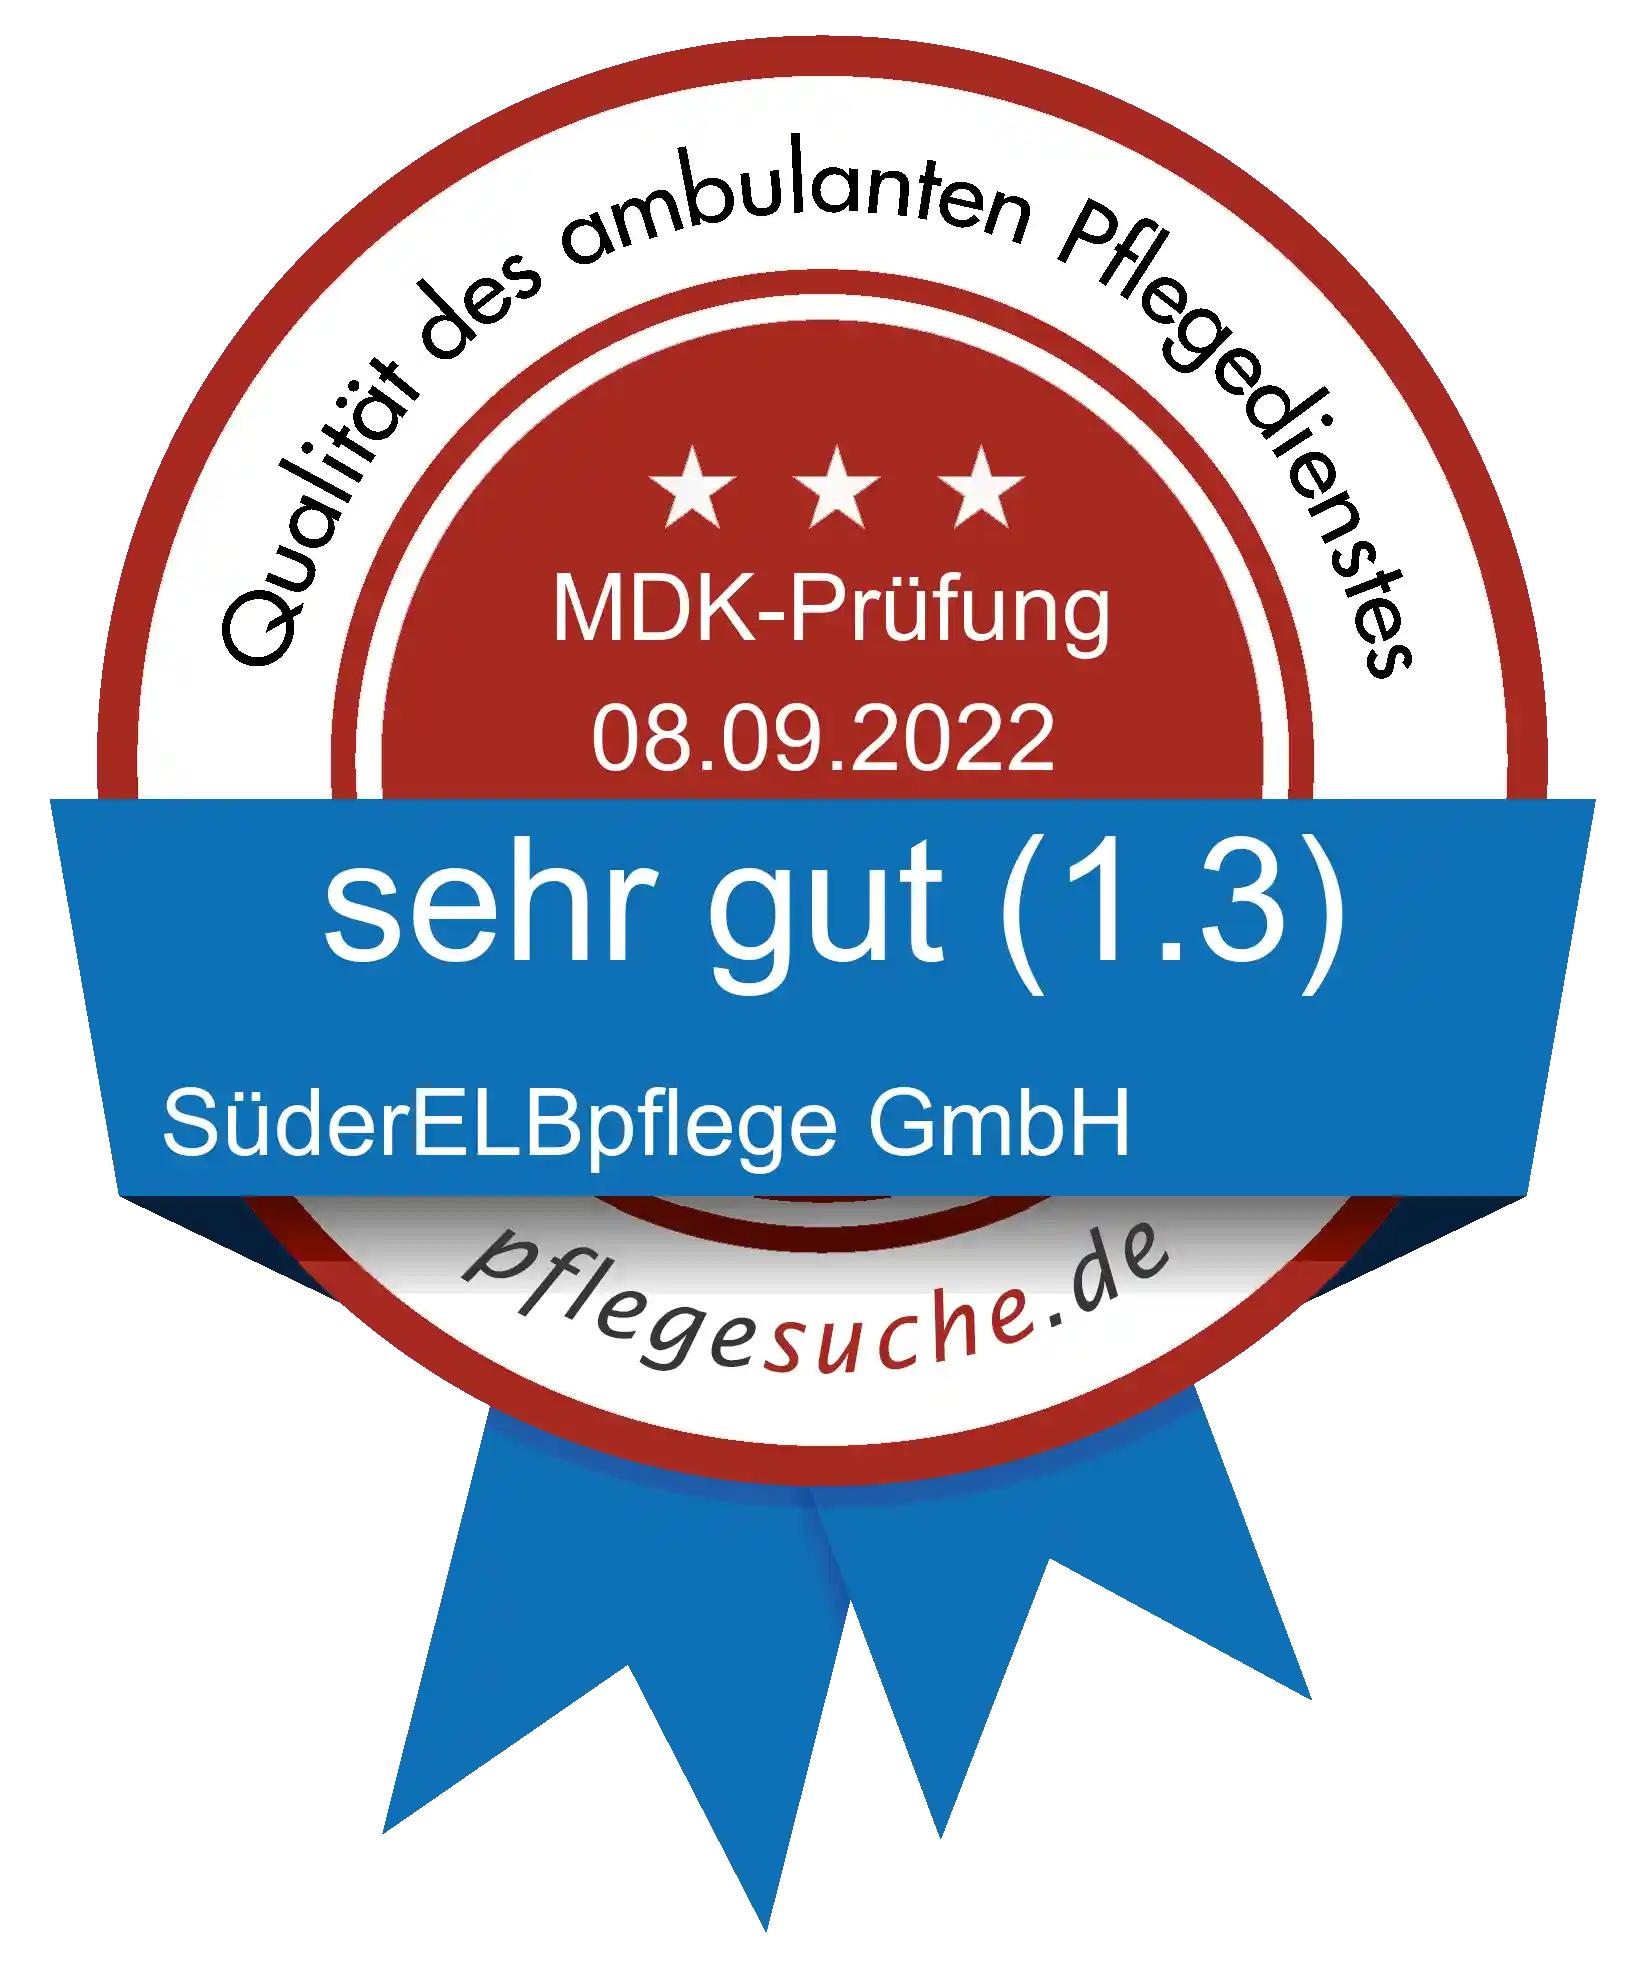 Siegel Benotung SüderELBpflege GmbH